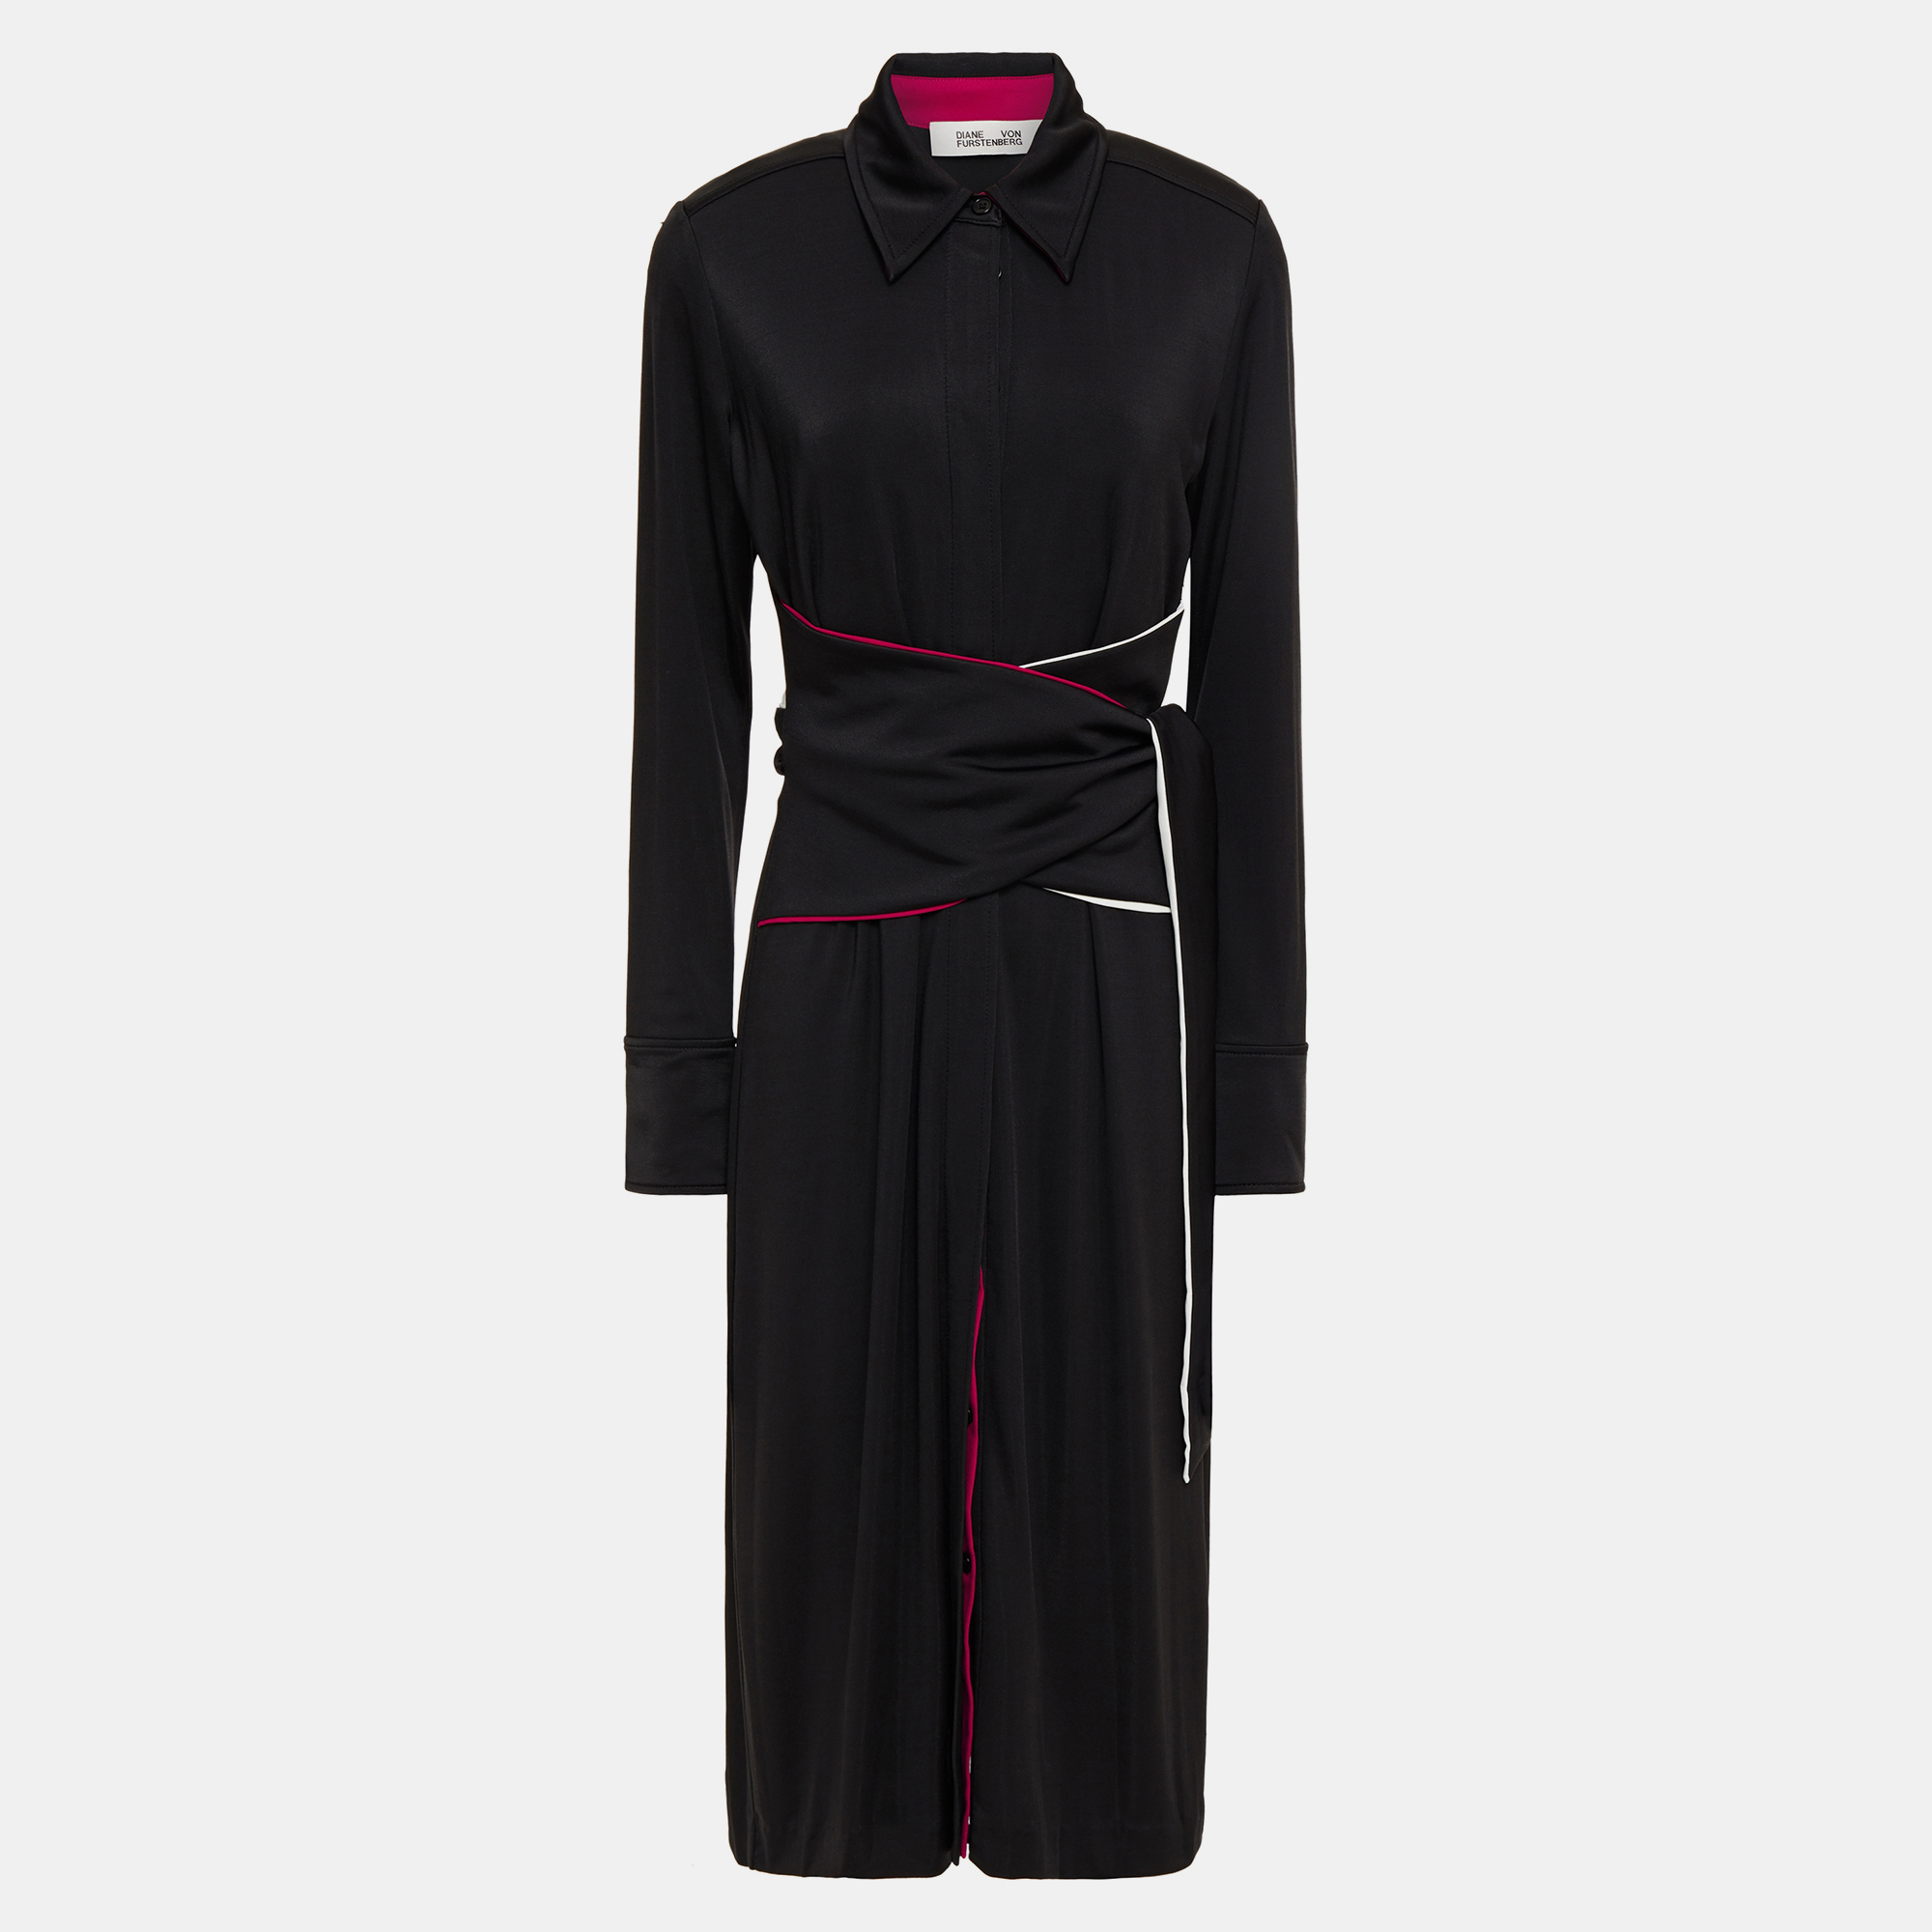 Diane von furstenberg black/pink jersey midi dress xs